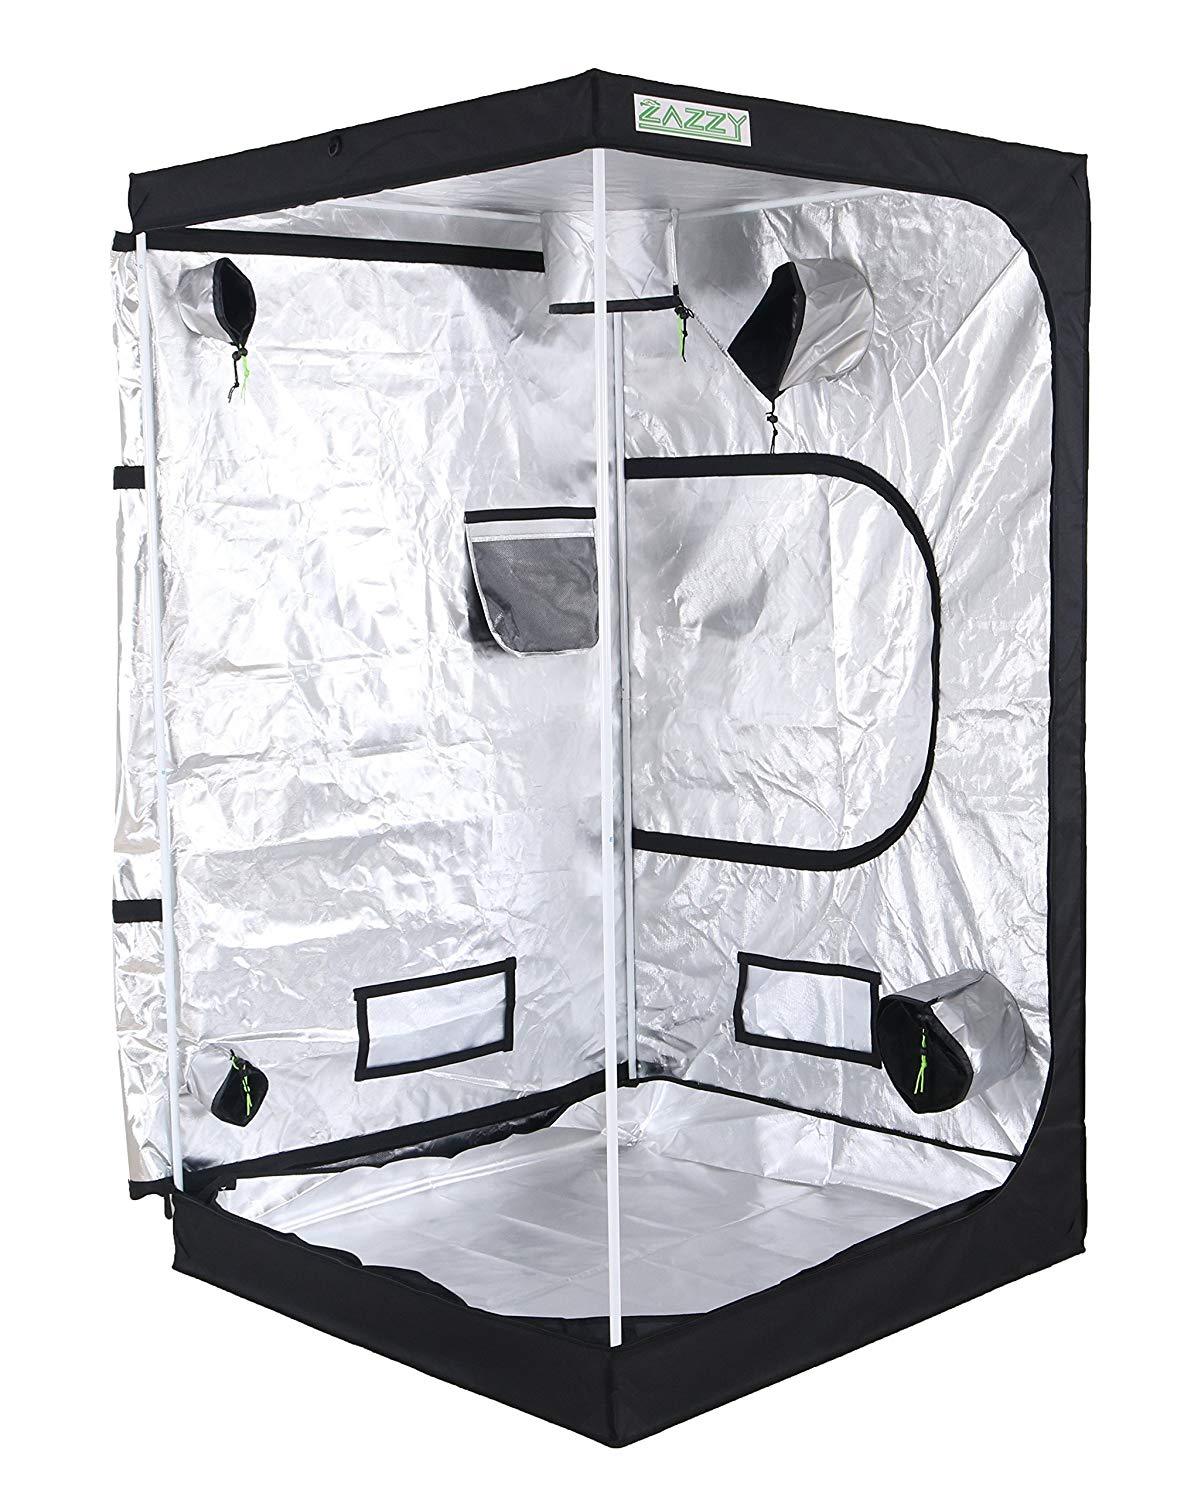 Zazzy 600D Mylar Hydroponic Indoor Grow Tent